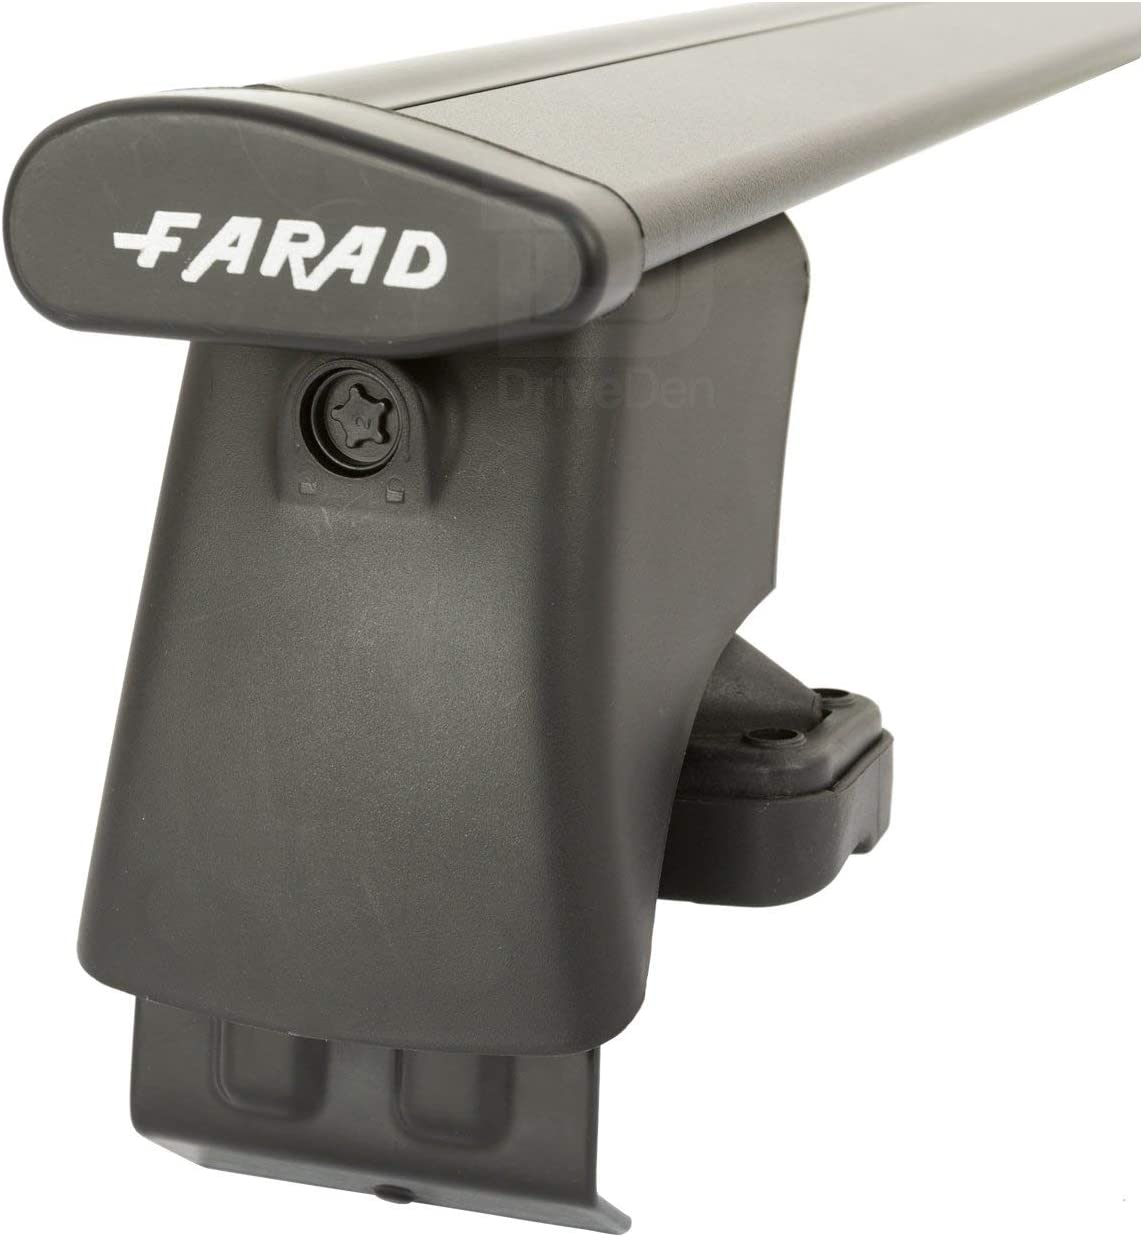 FARAD-Kit H2 per barre portatutto - Seat Toledo 2013> (senza corrimano)